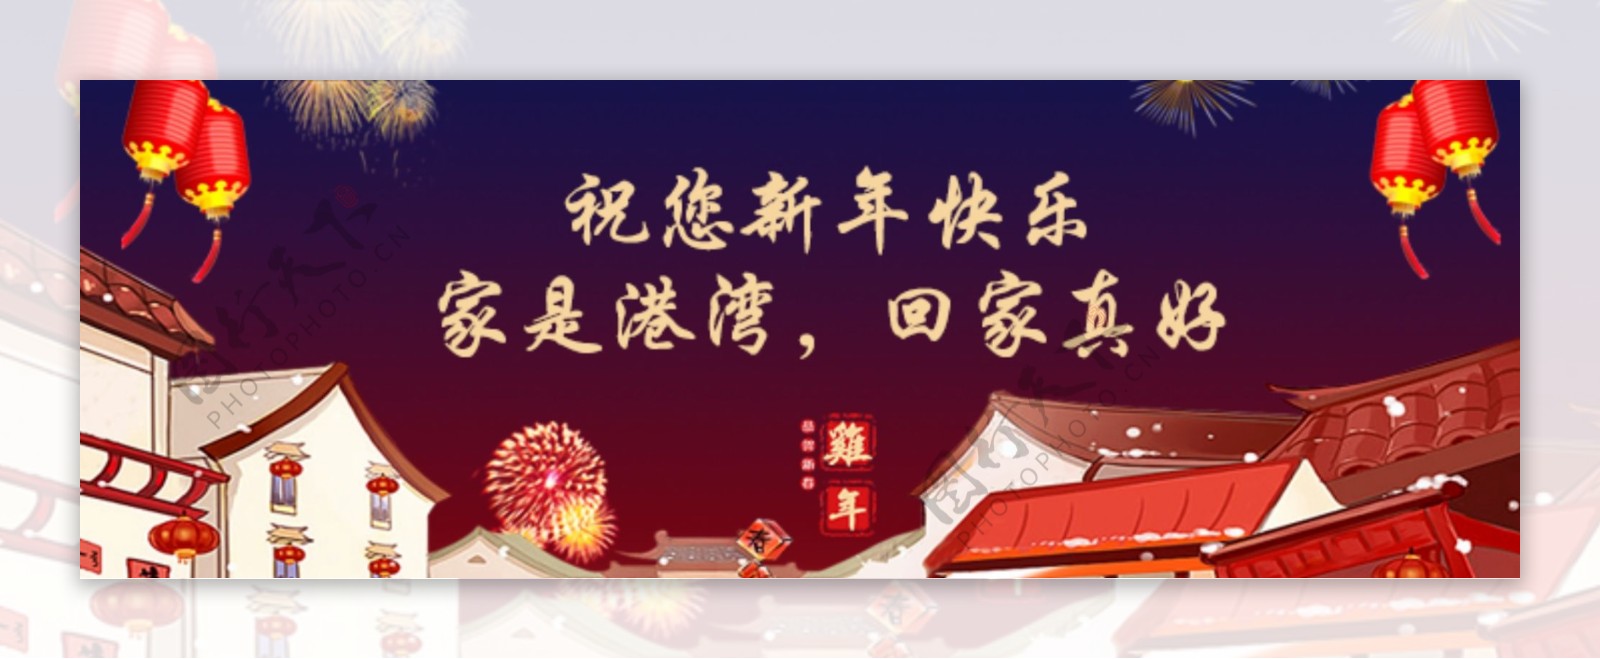 新年快乐祝福宣传banner手机